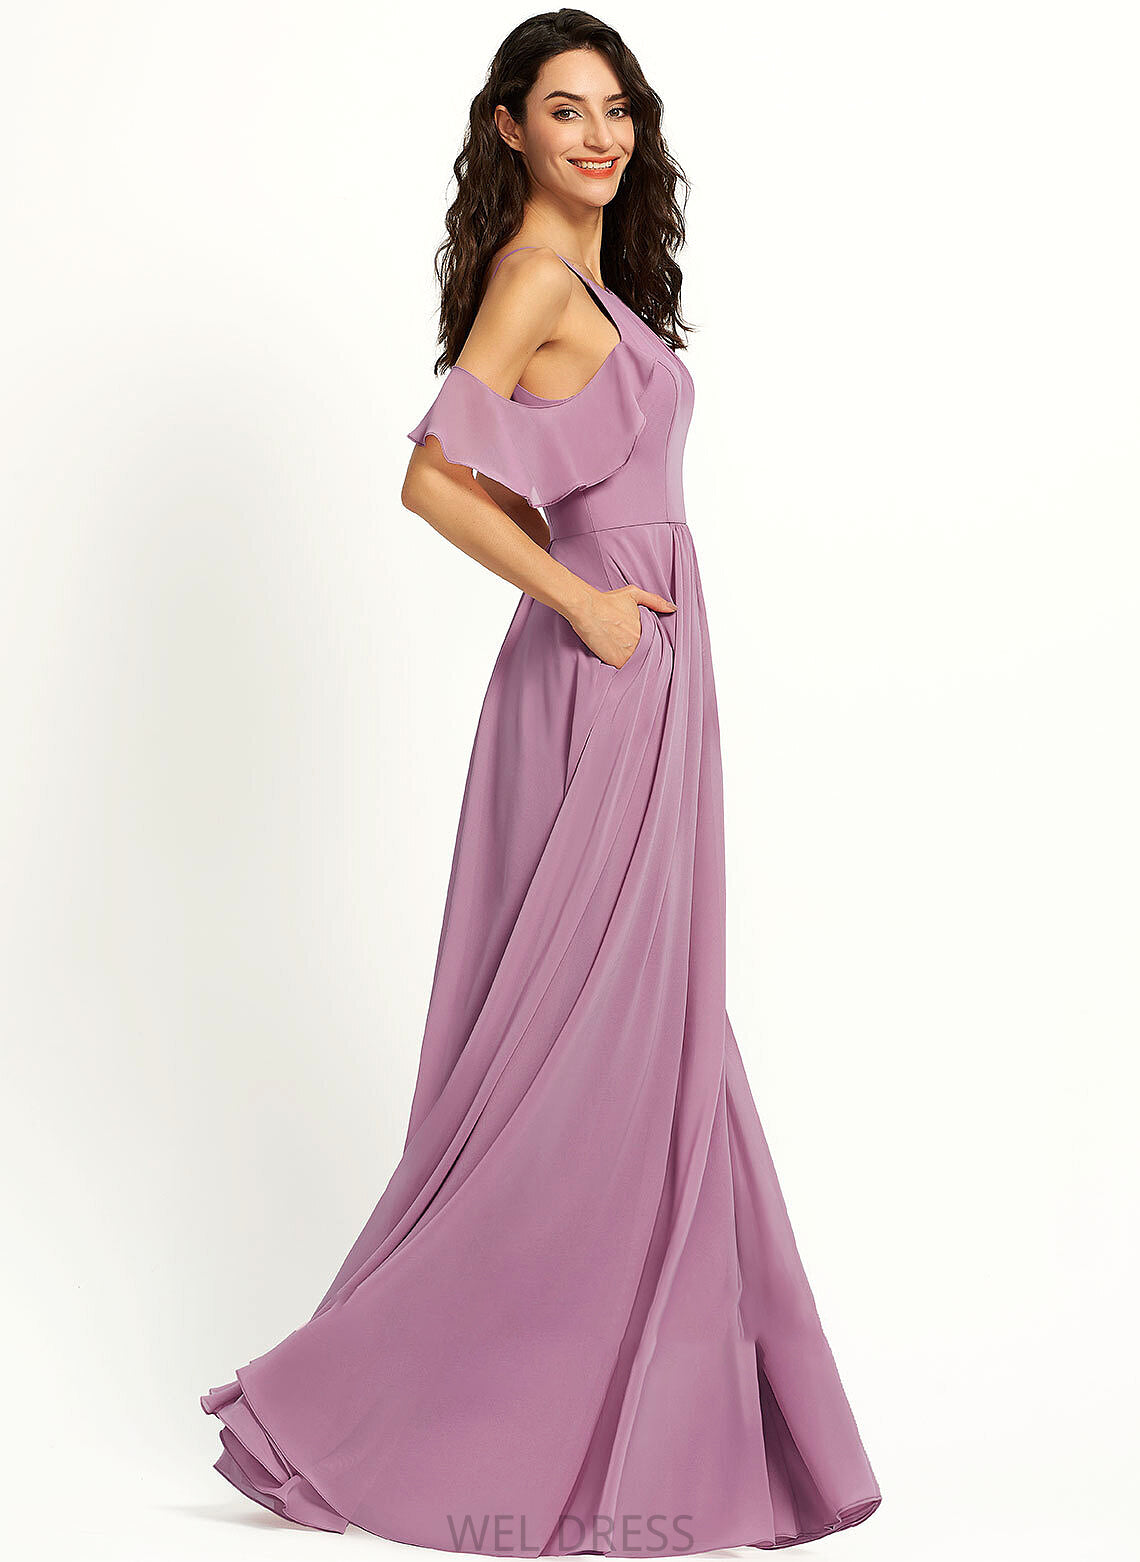 ScoopNeck Silhouette Fabric Embellishment Pockets Length Neckline Floor-Length A-Line Nina Sleeveless A-Line/Princess